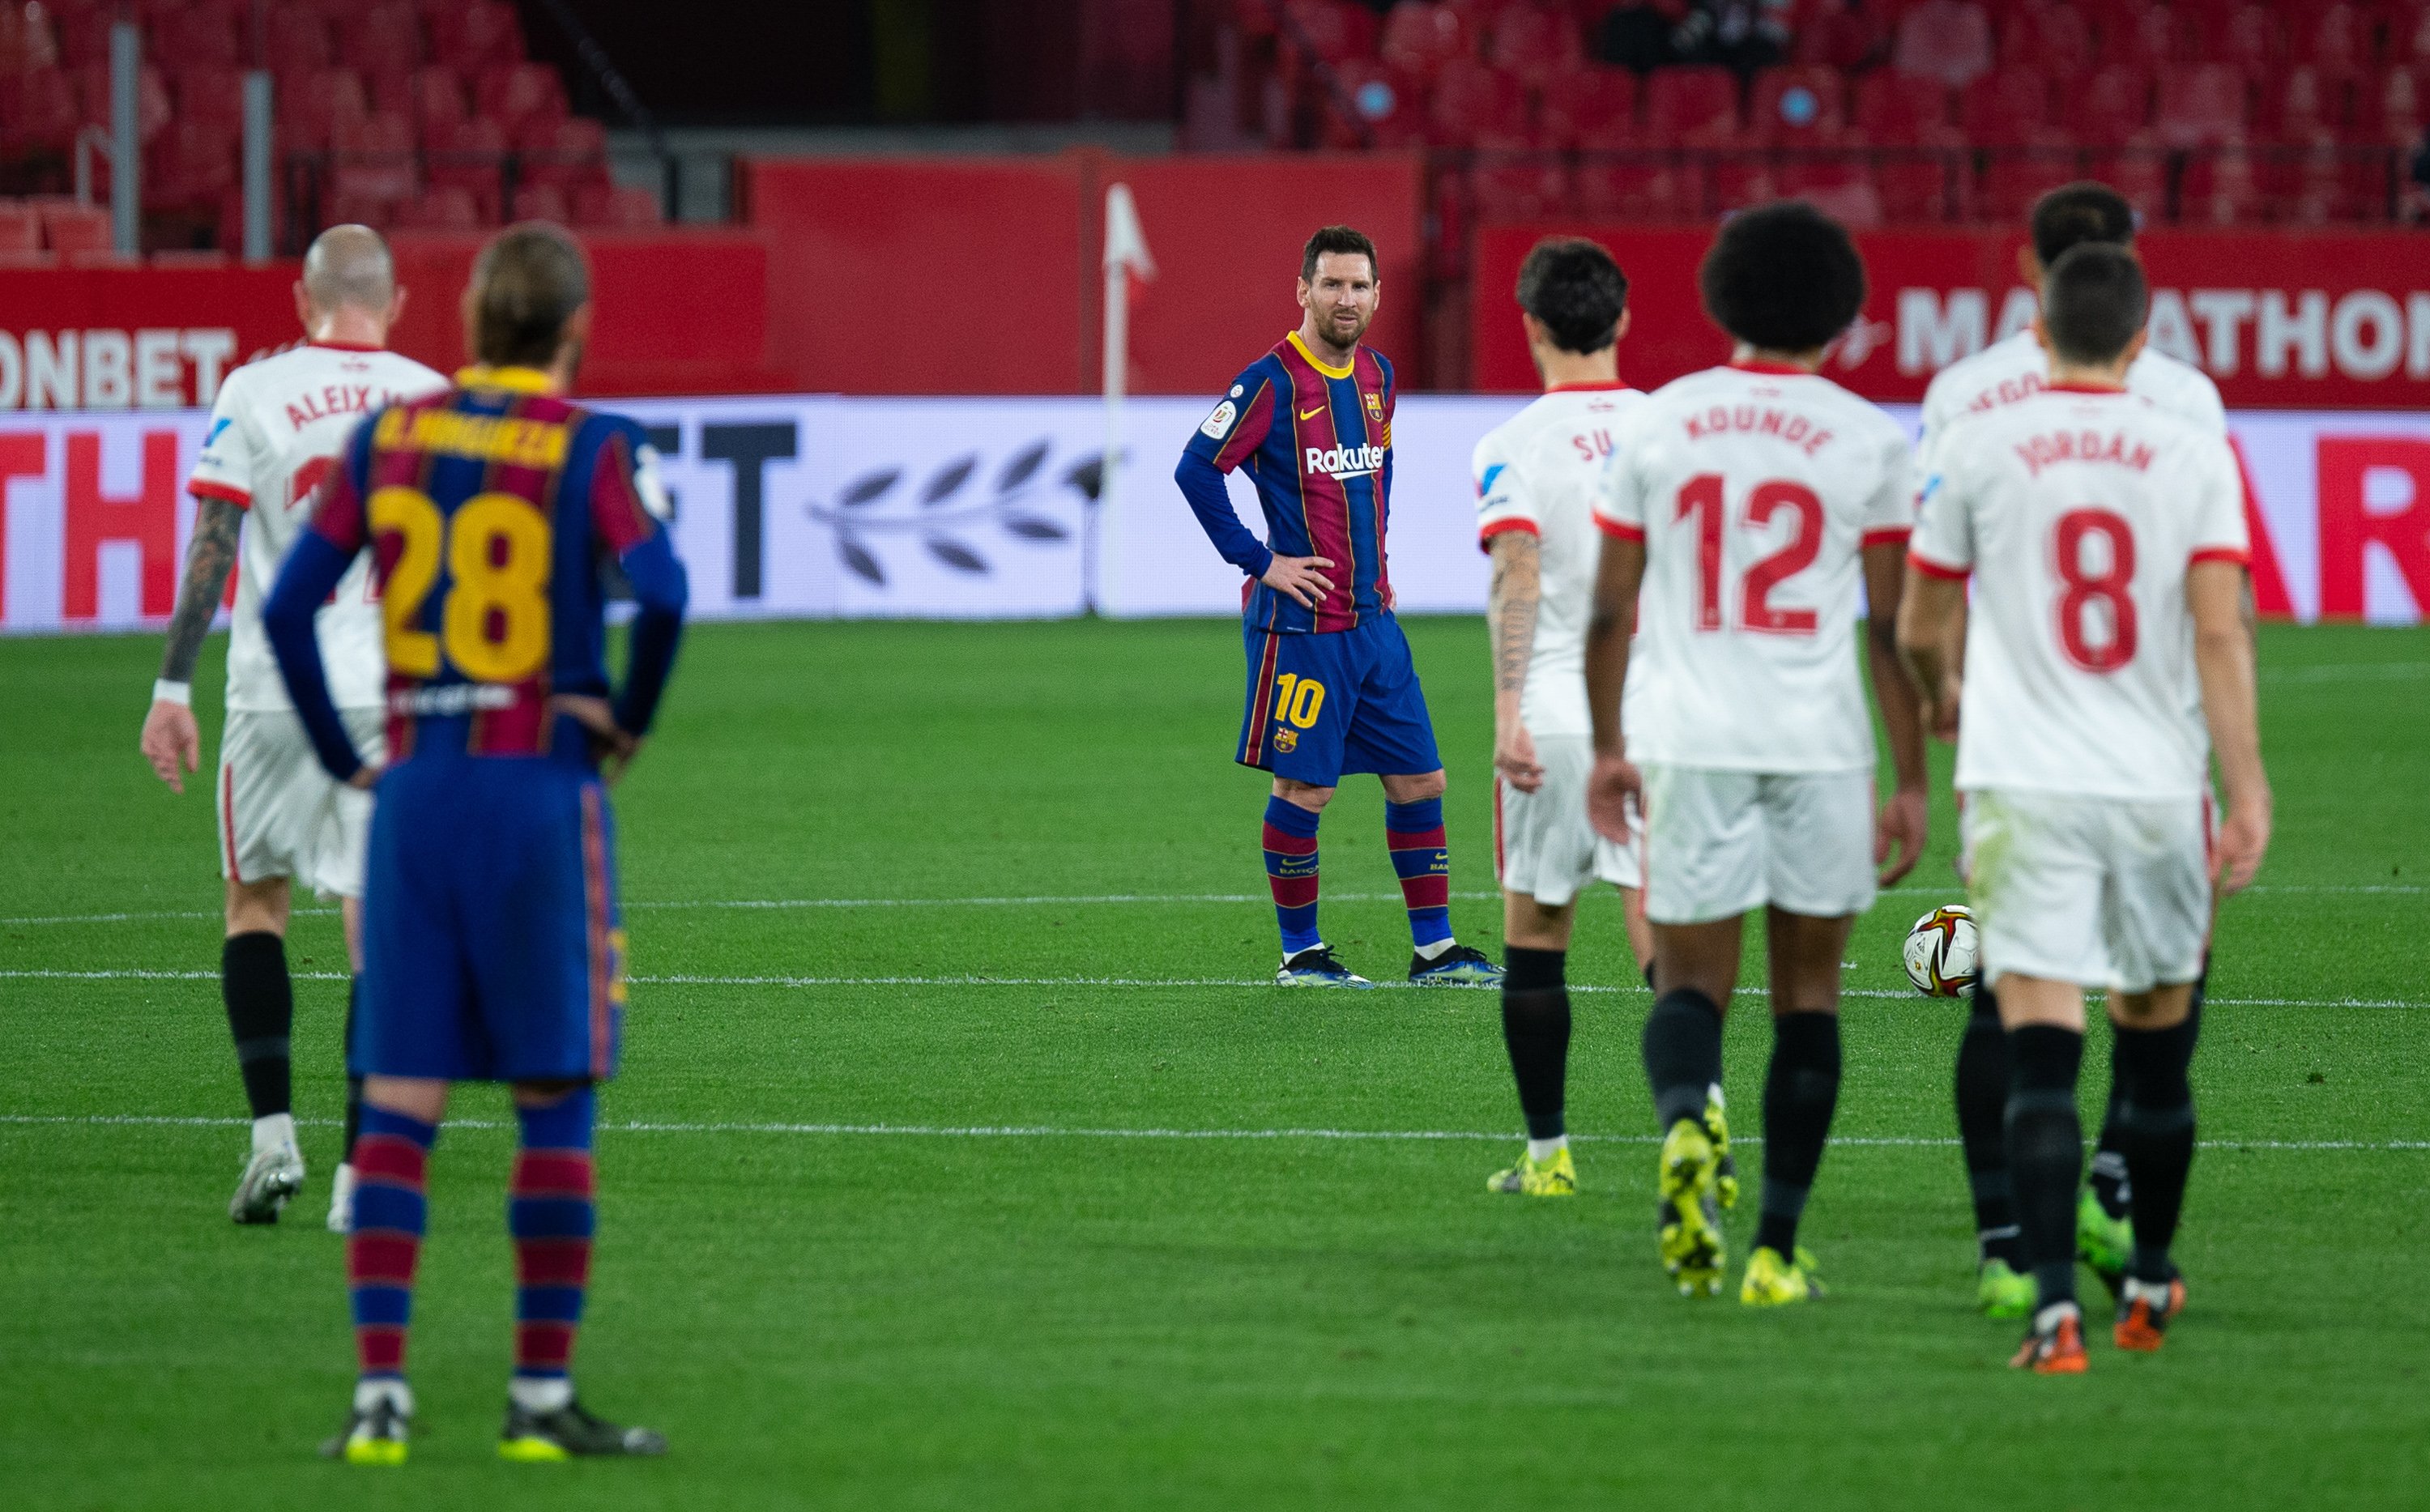 Dues visions per a quatre portades: el Barça podrà remuntar?